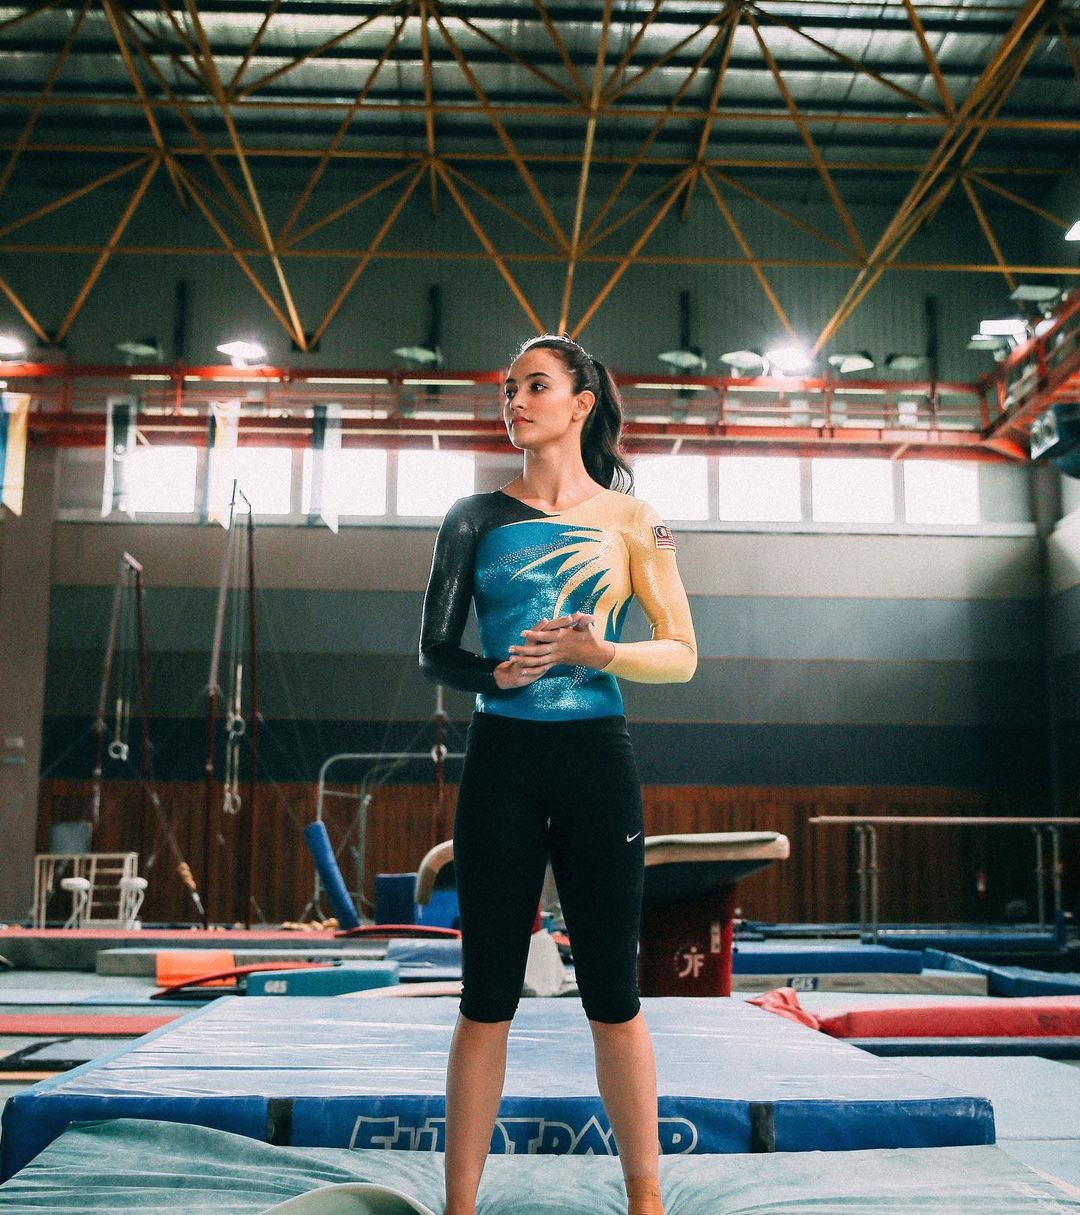 Malaysian artistic gymnast